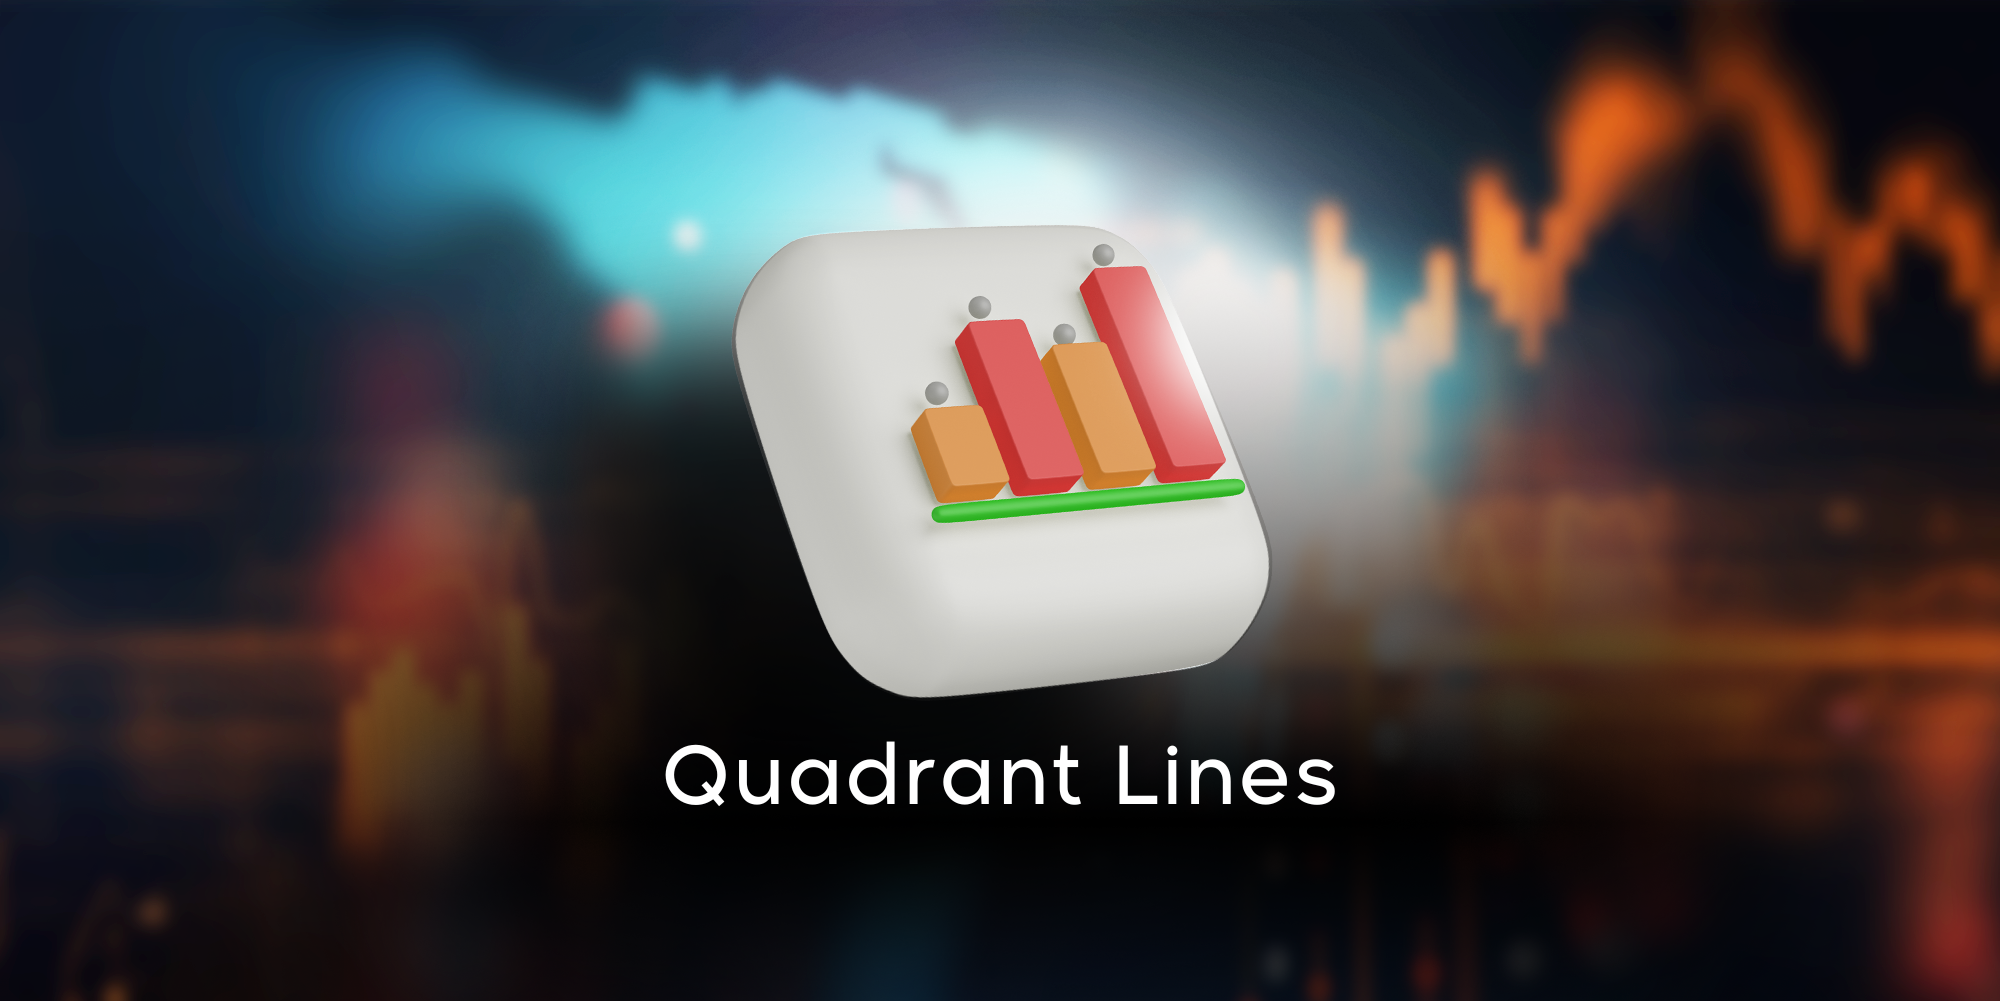 Quadrant Lines